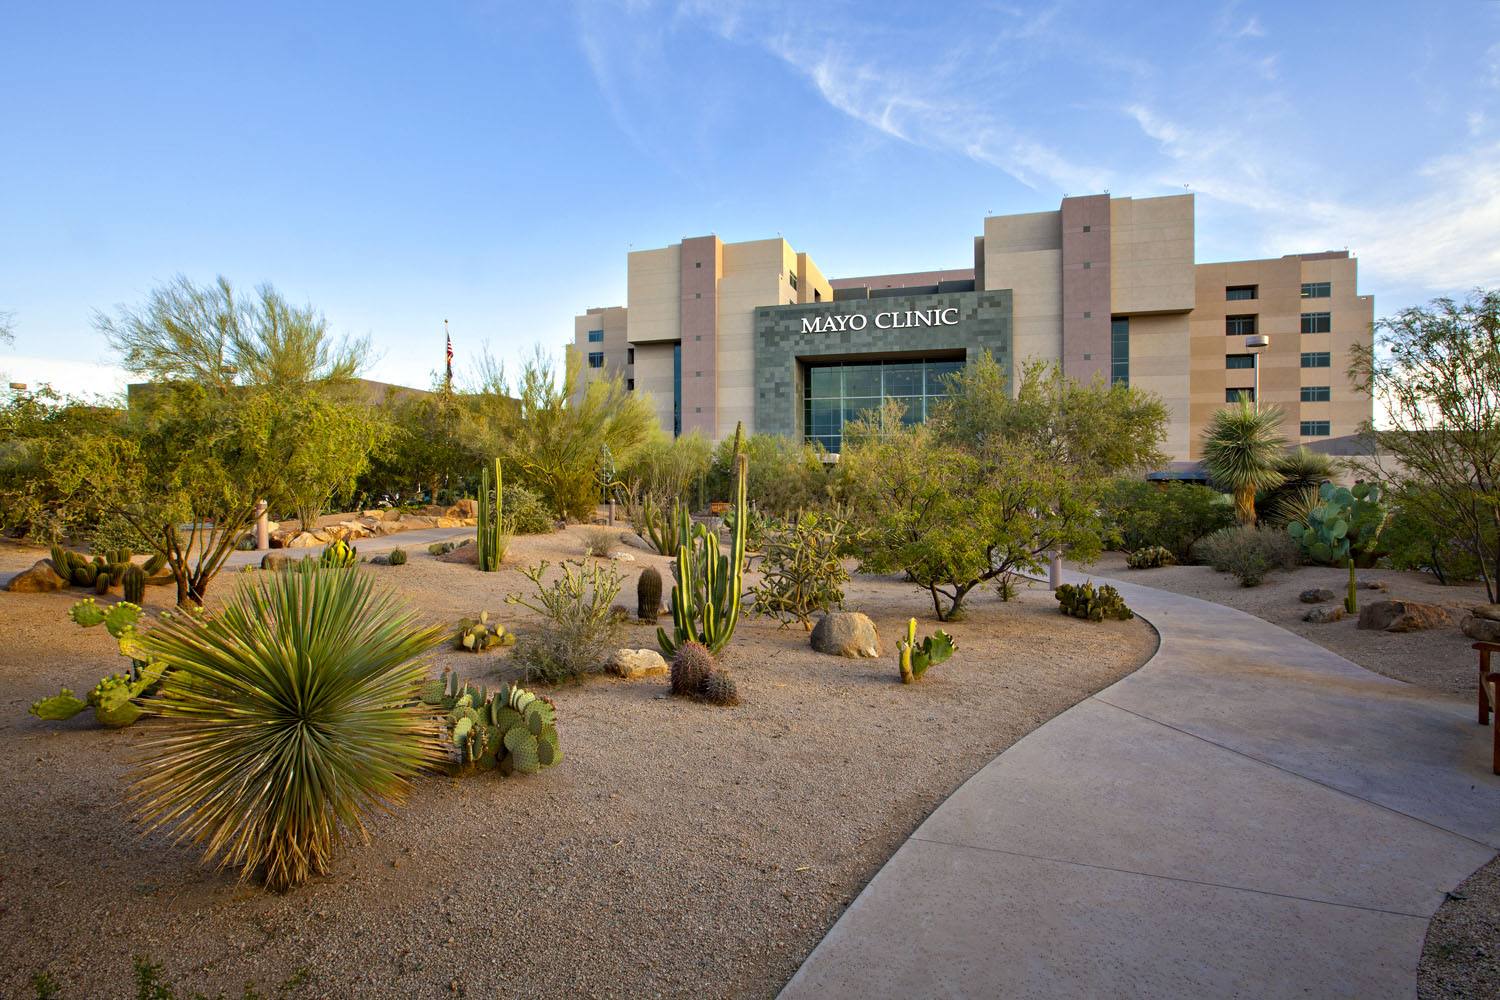 Mayo Clinic's Campus in Arizona